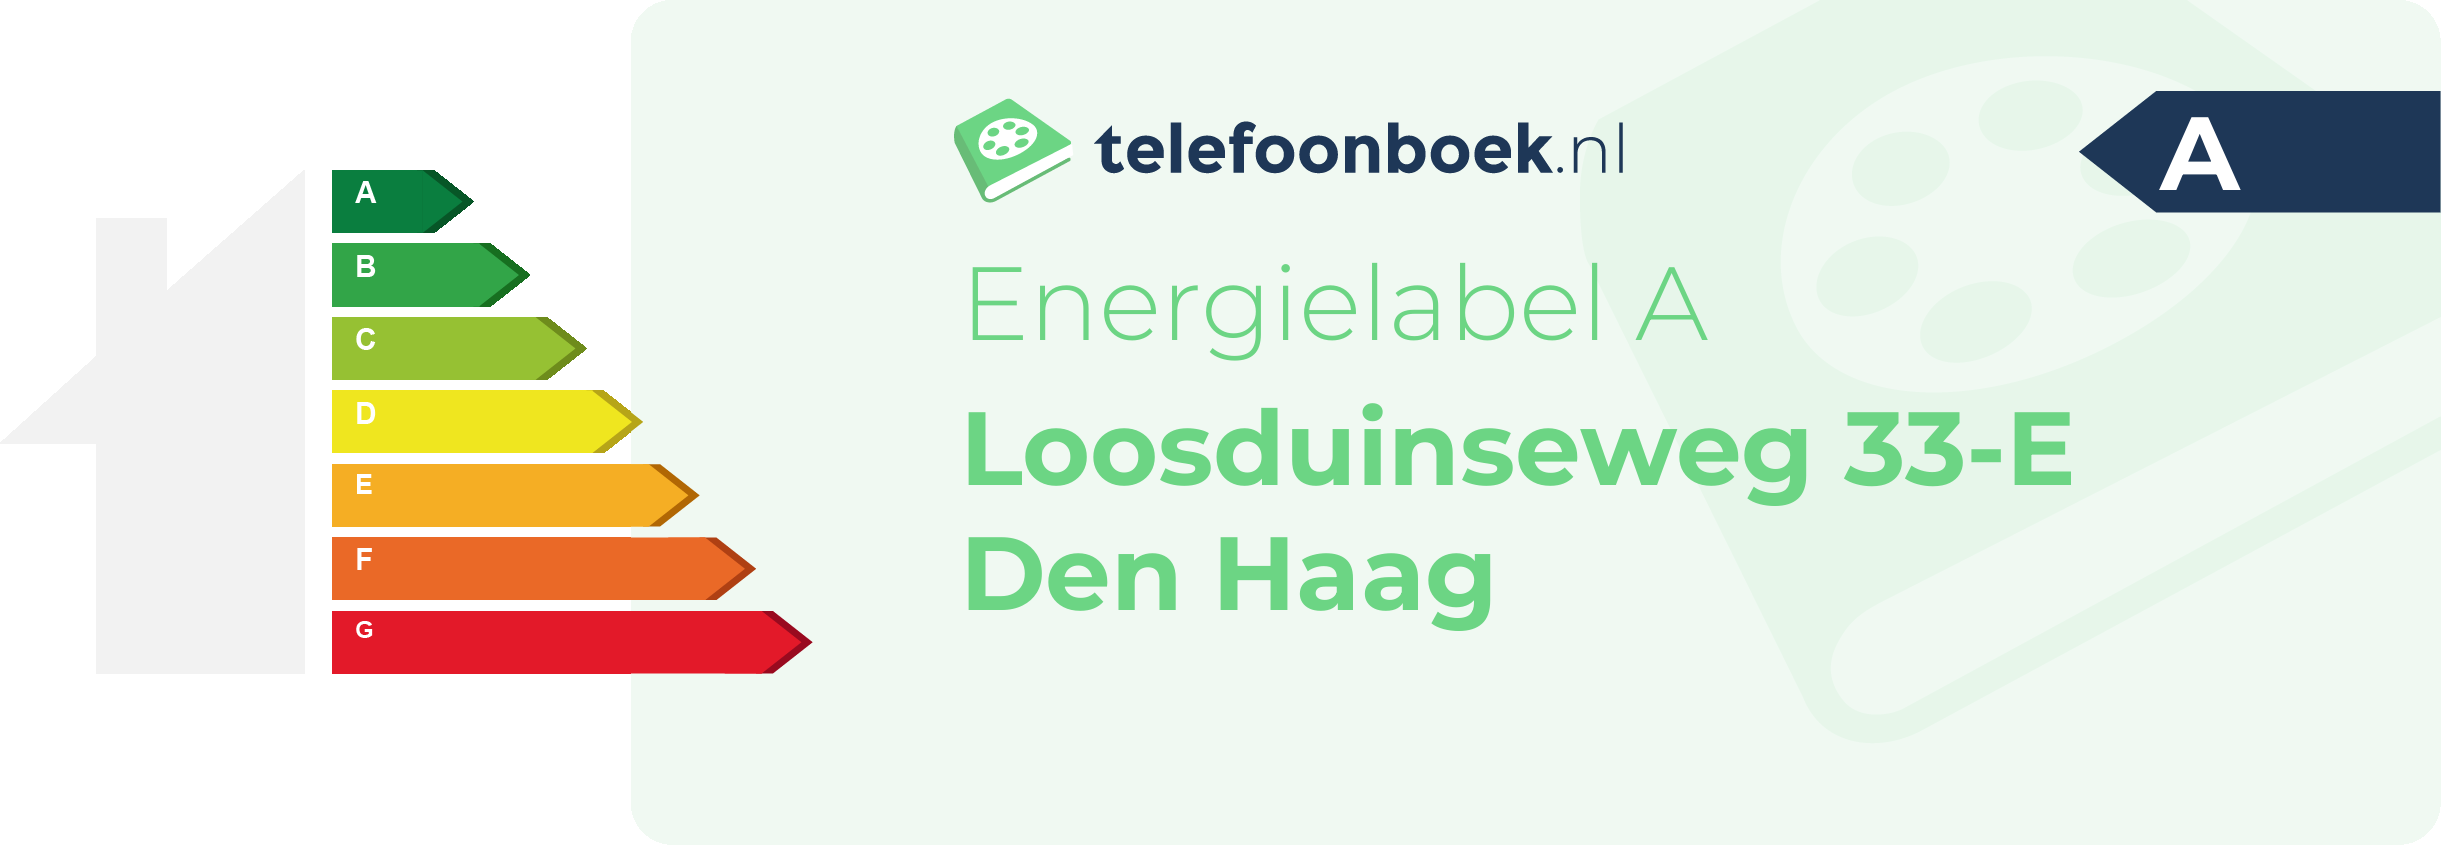 Energielabel Loosduinseweg 33-E Den Haag